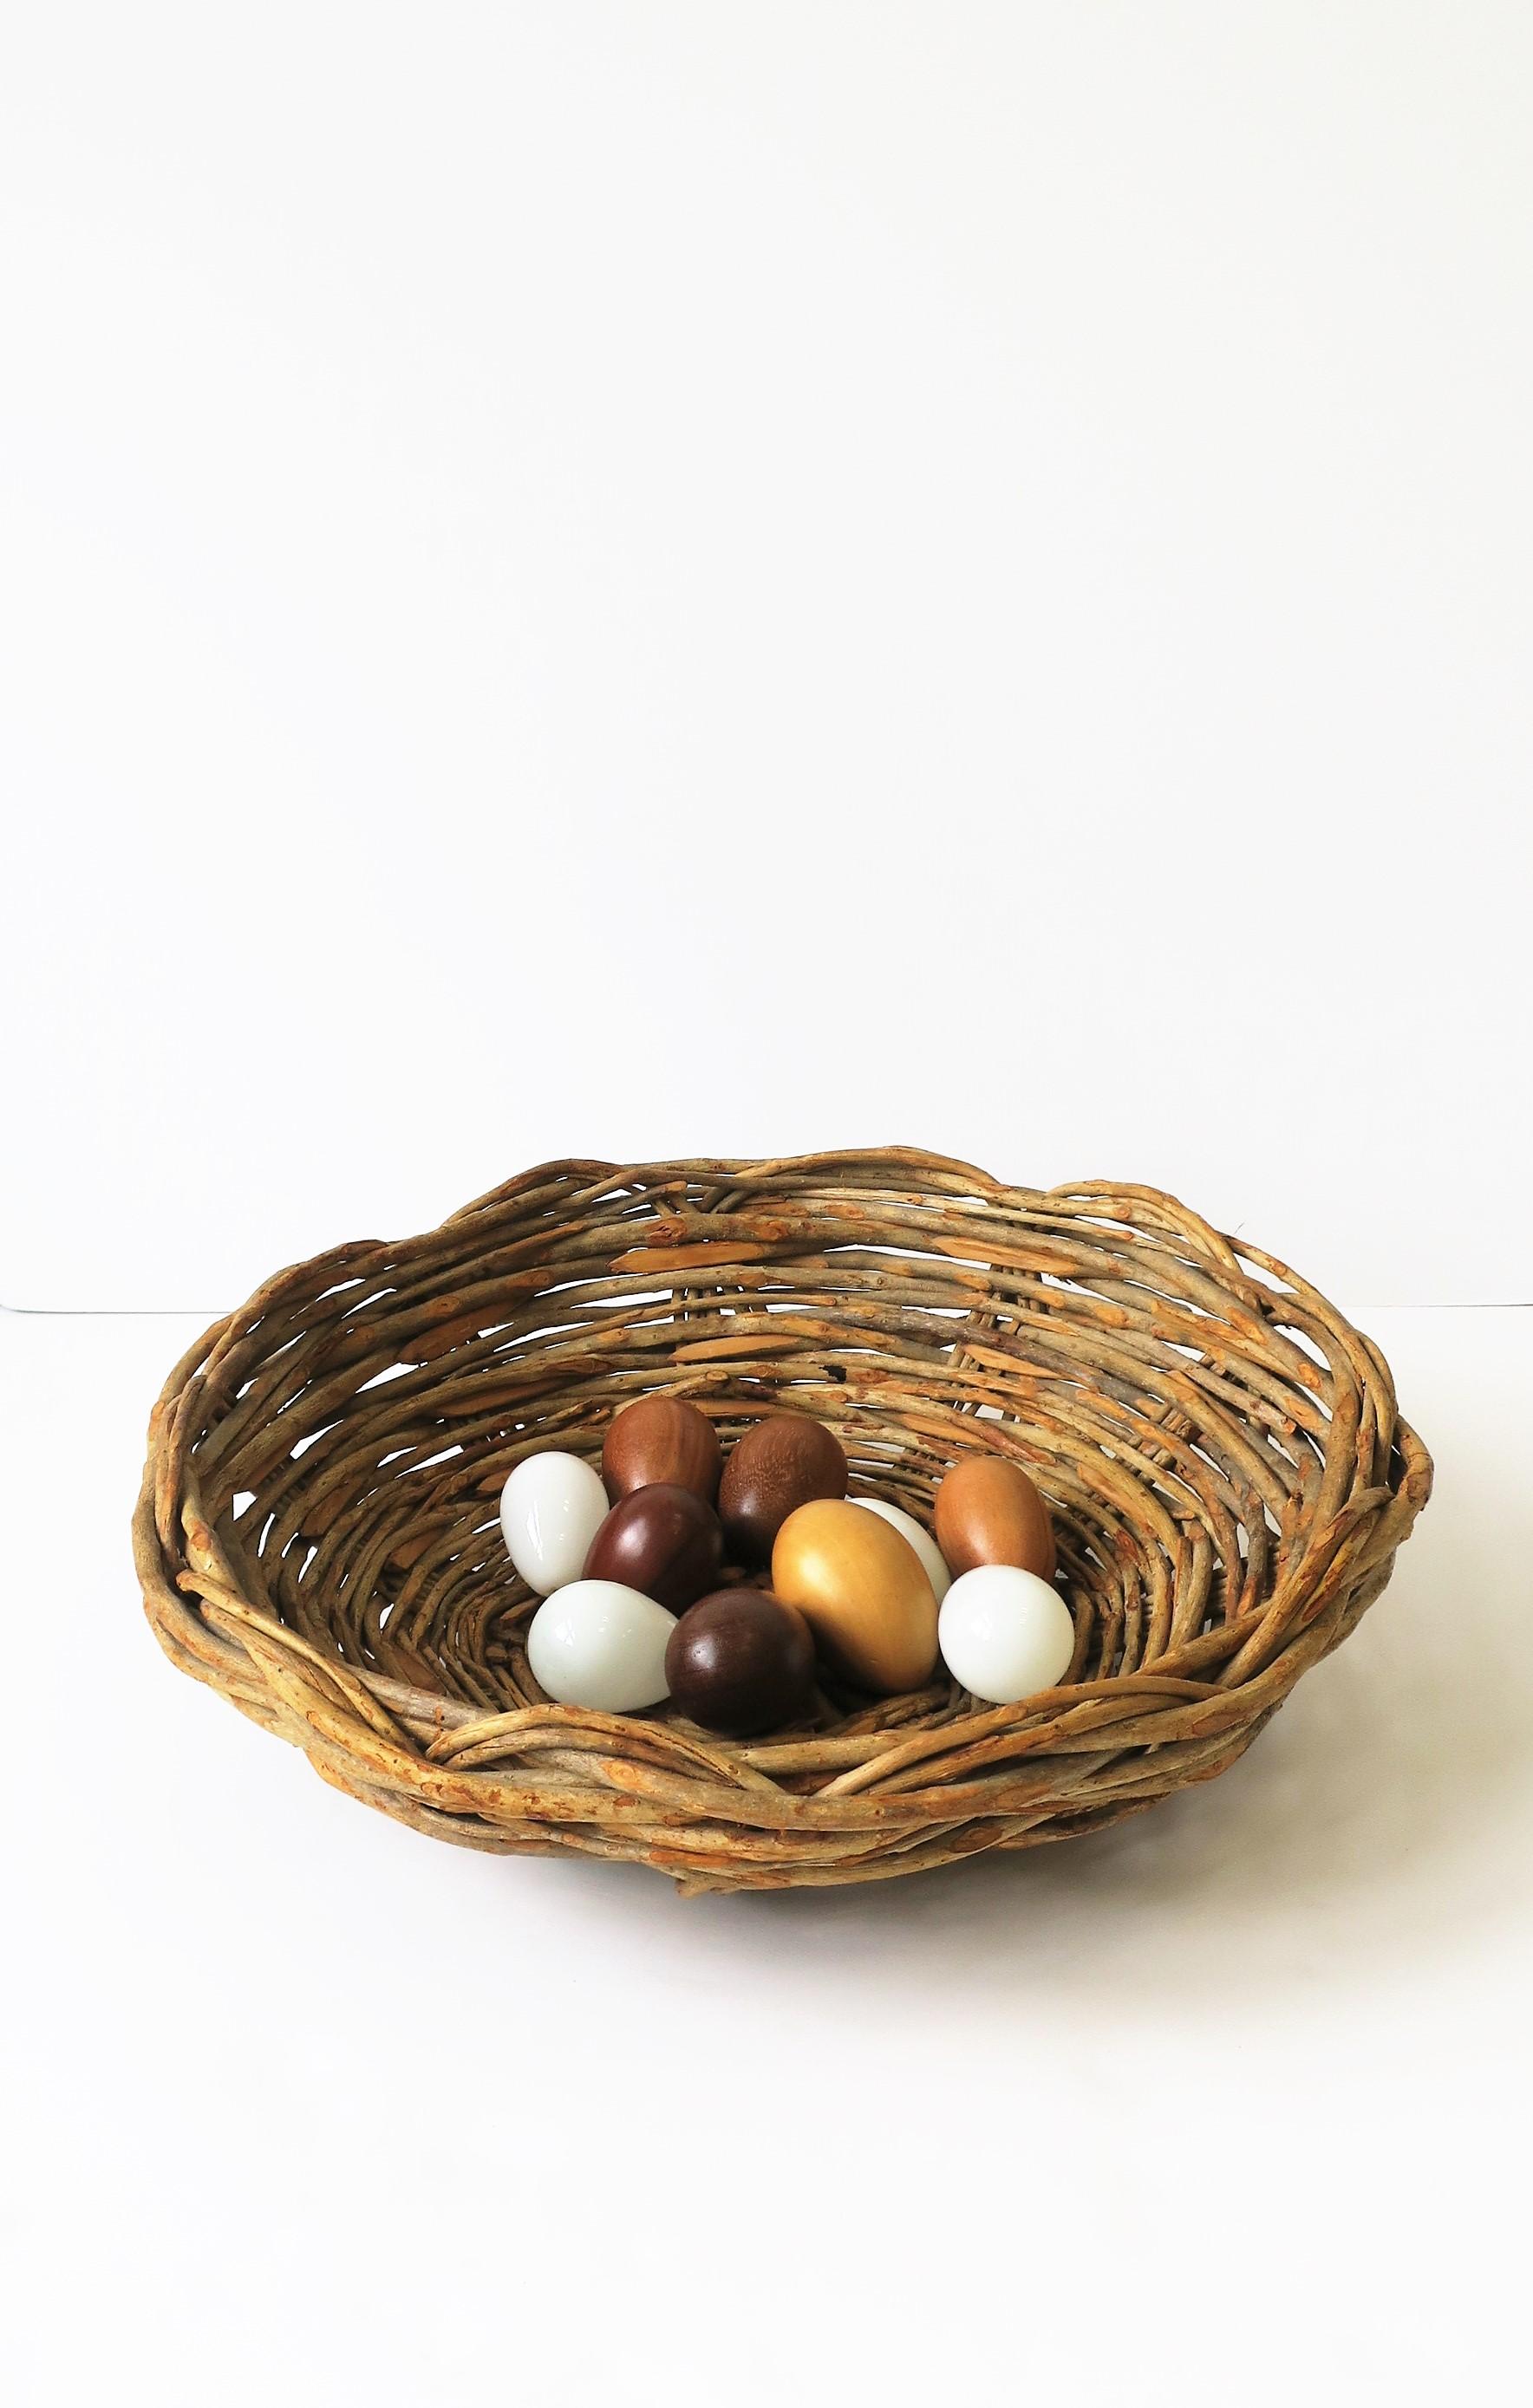 Wicker Basket Centerpiece Catchall, Round For Sale 2